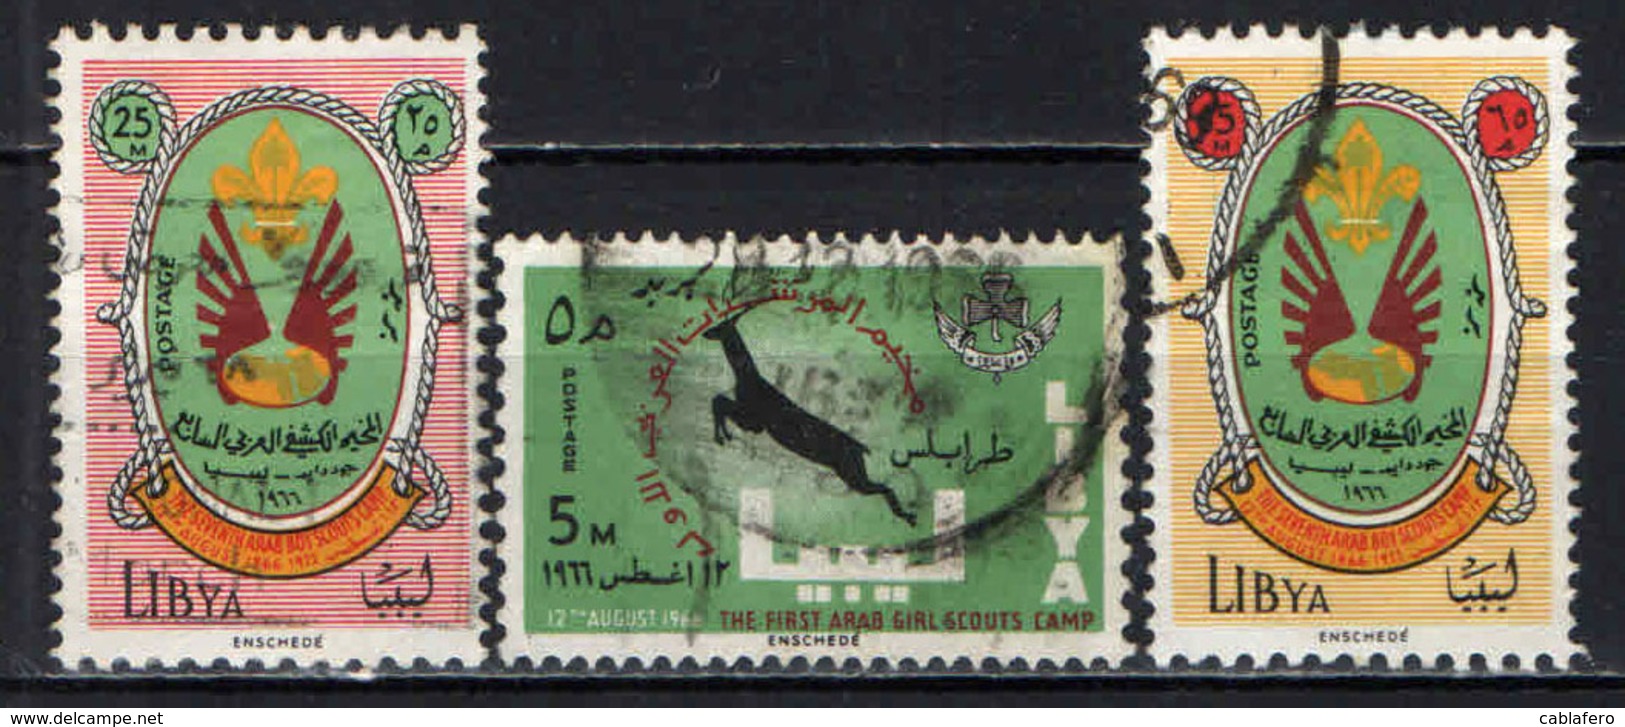 LIBIA - 1966 - SCOUTISMO - USATI - Libië